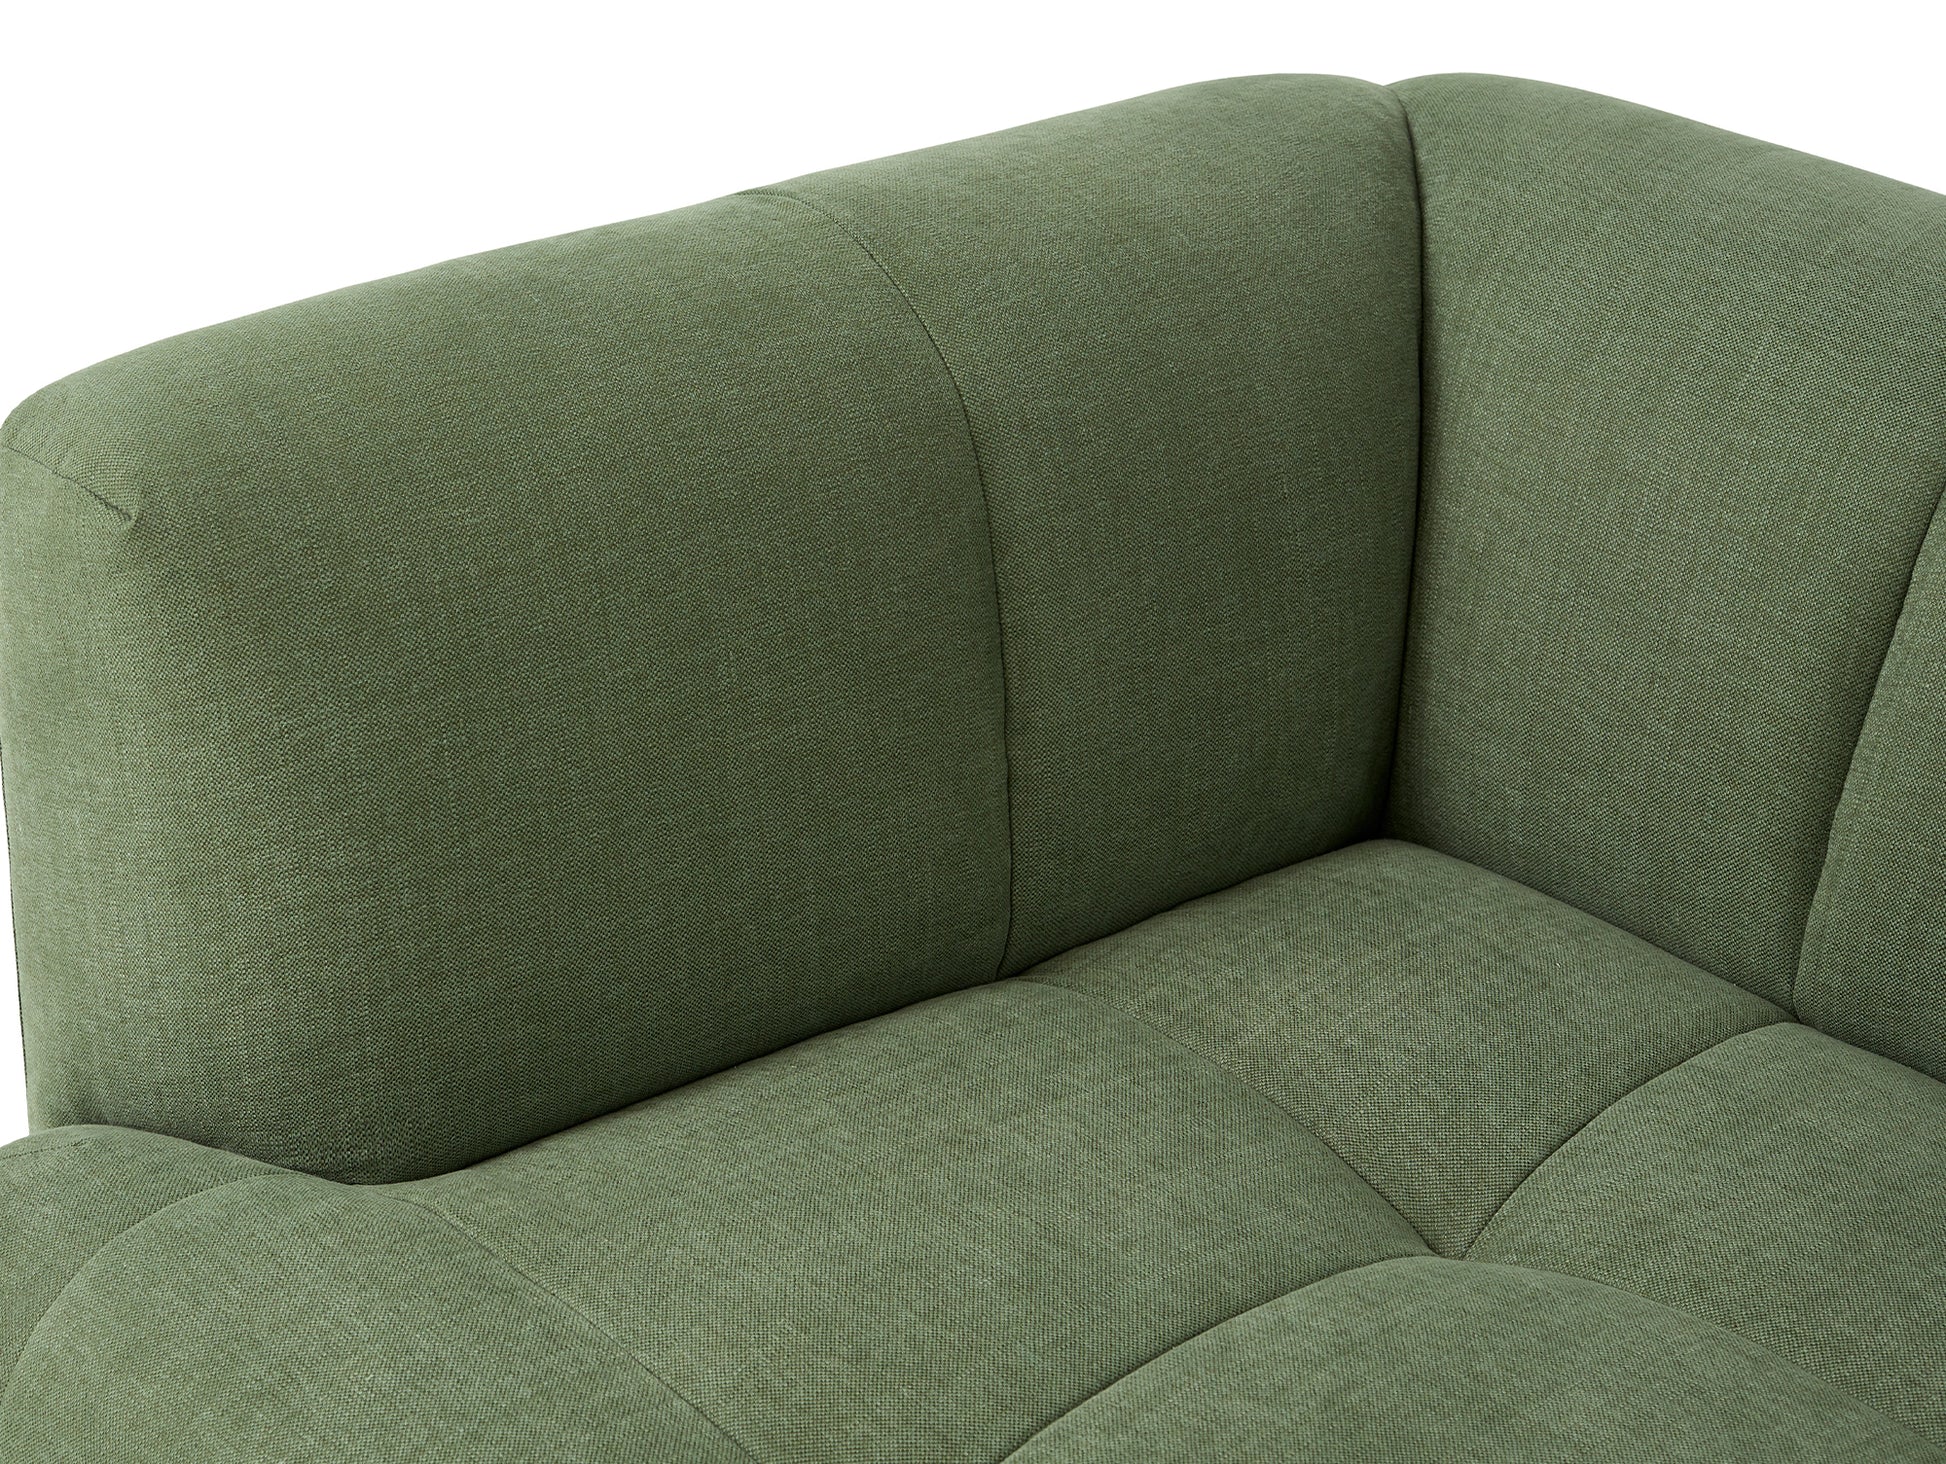 Quilton Corner Sofa by HAY - Combination 25 / Linara Tarragon 100